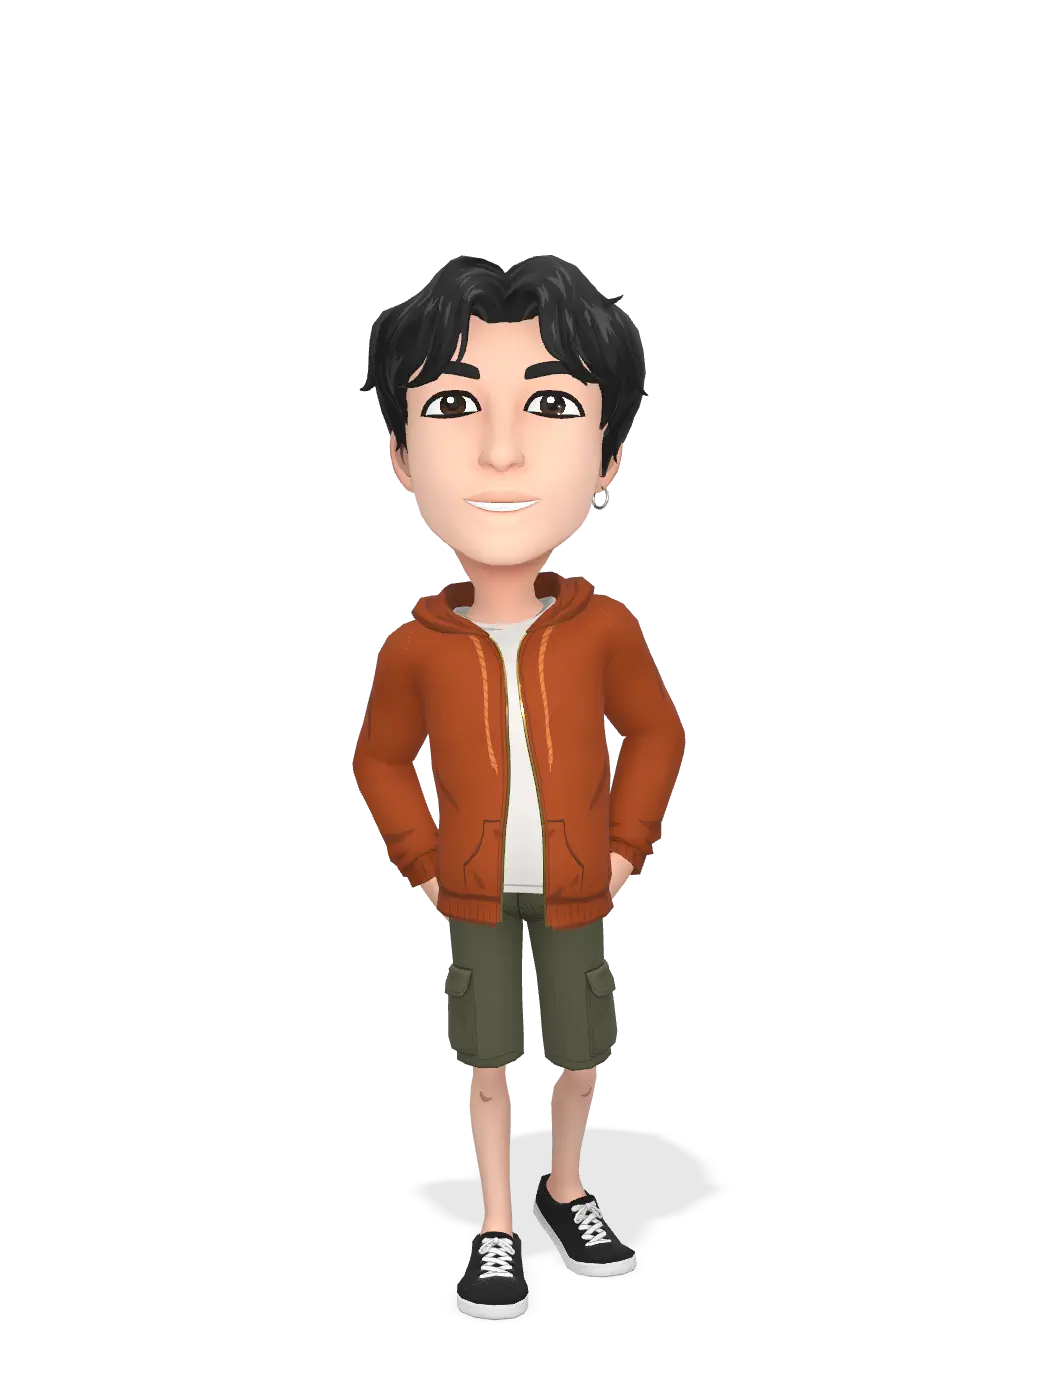 3D Bitmoji for teomman avatar